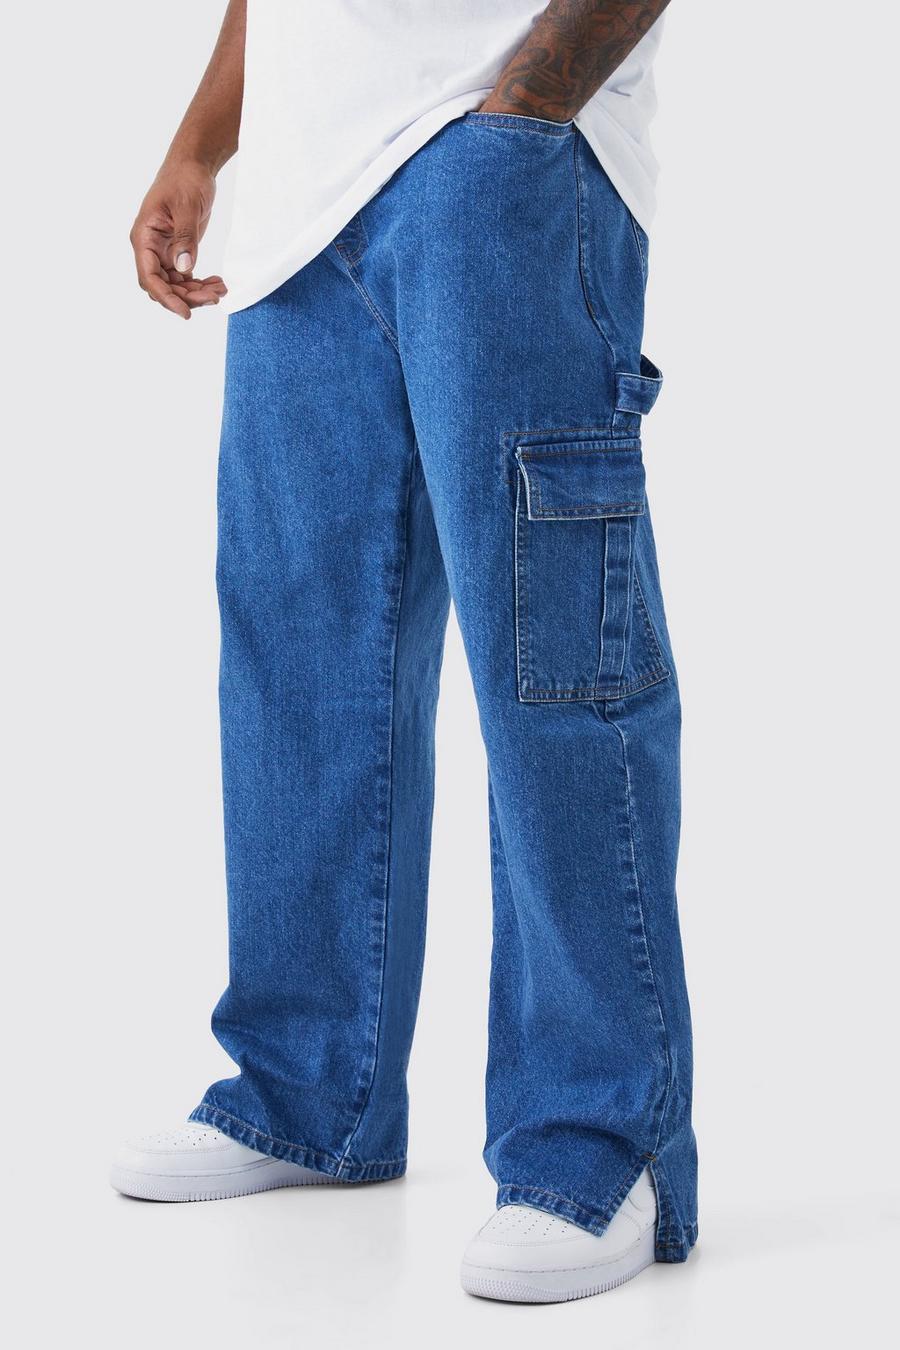 Jeans Plus Size in denim rigido rilassato con spacco sul fondo, Antique blue